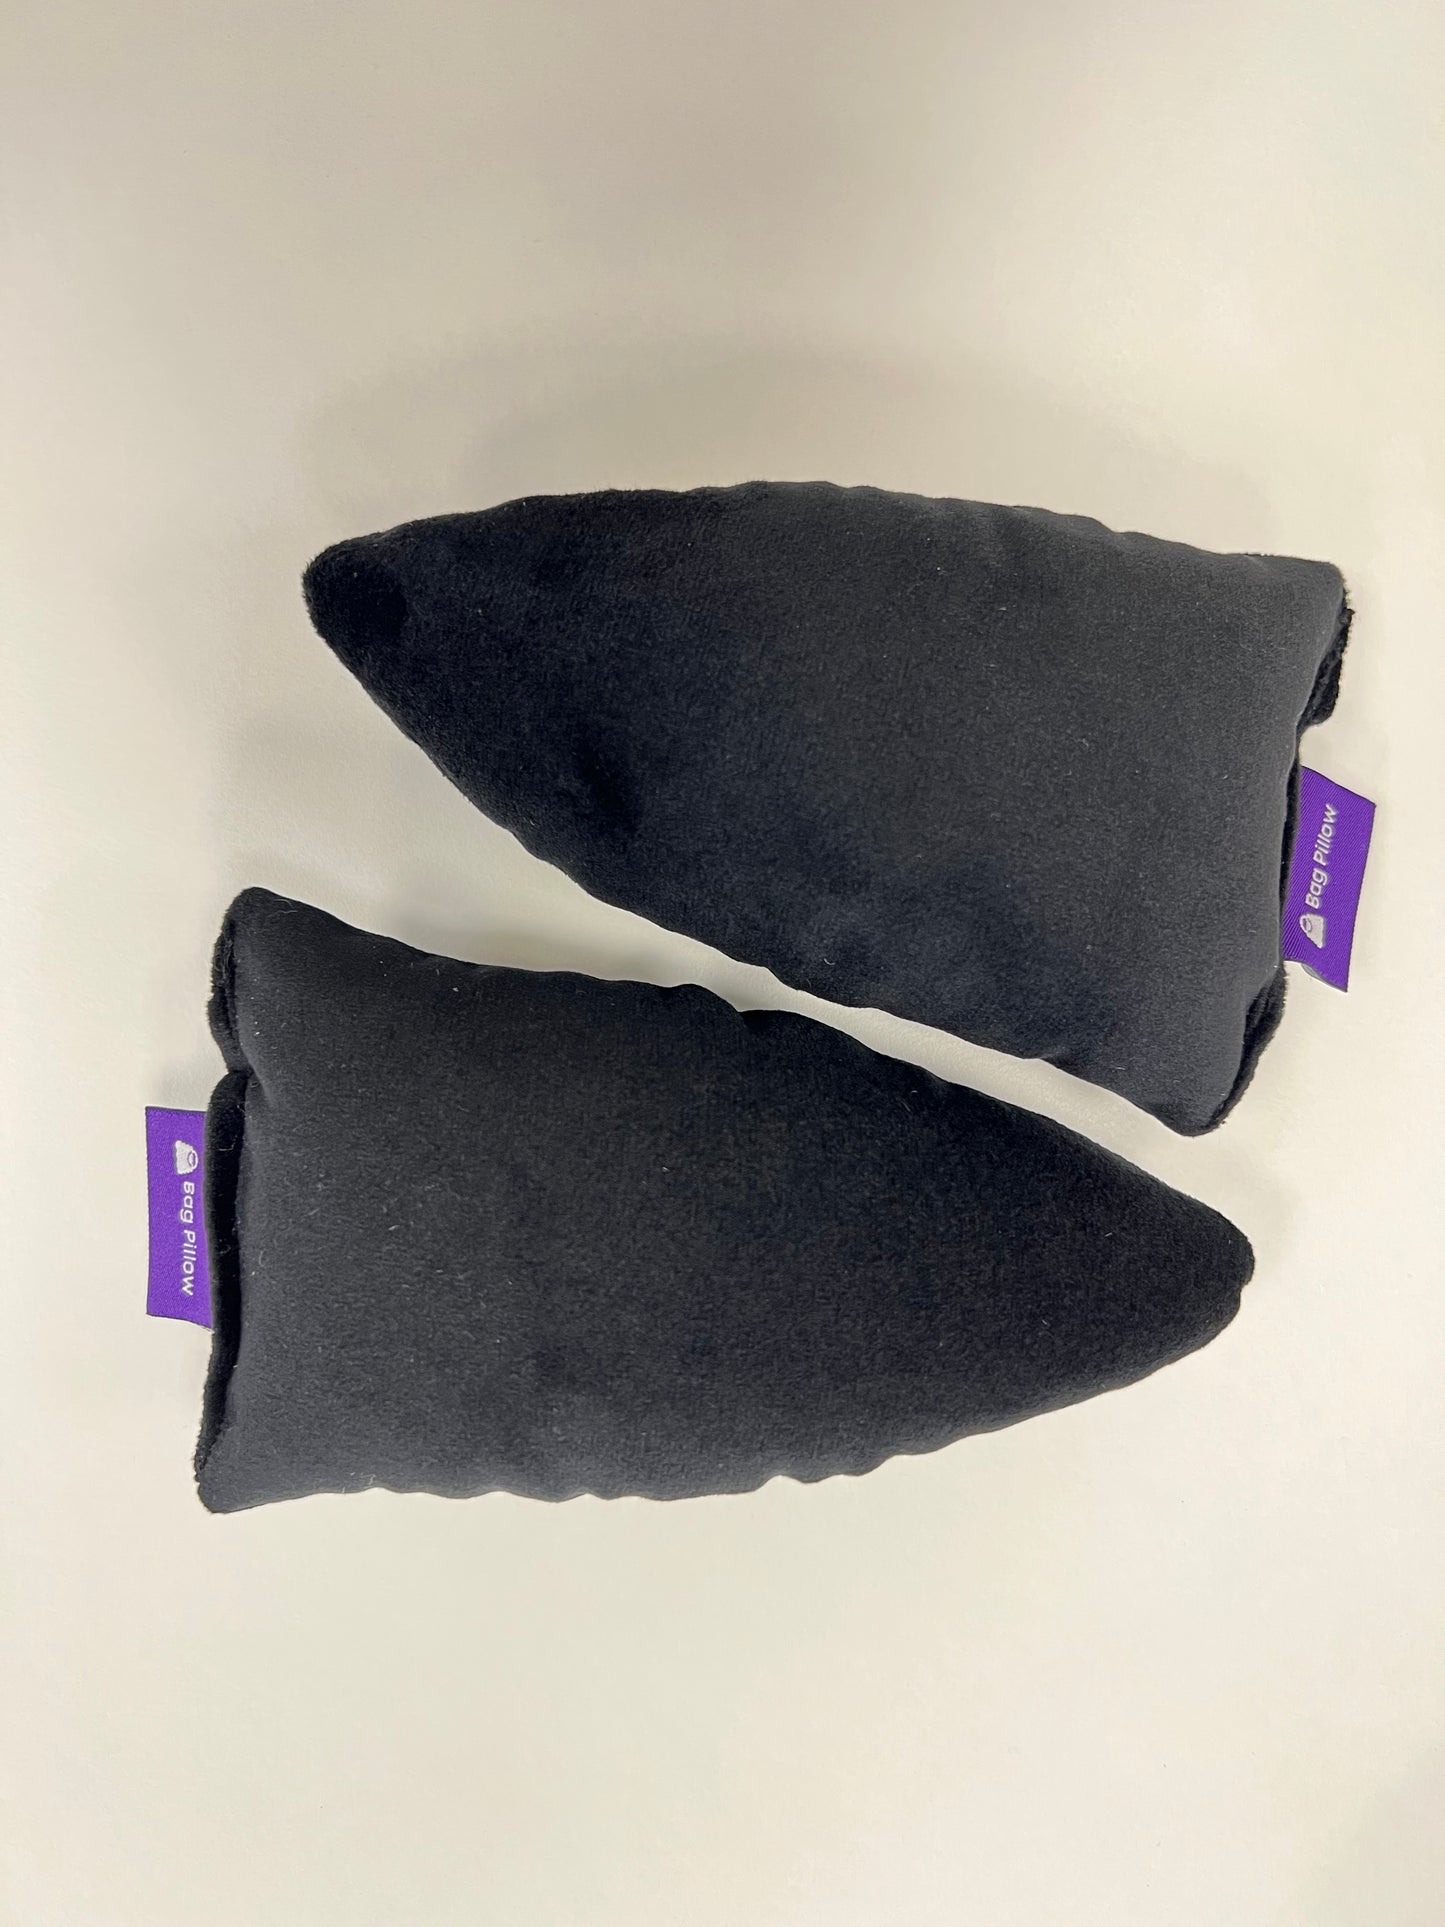 Shoe/Sandal Pillows